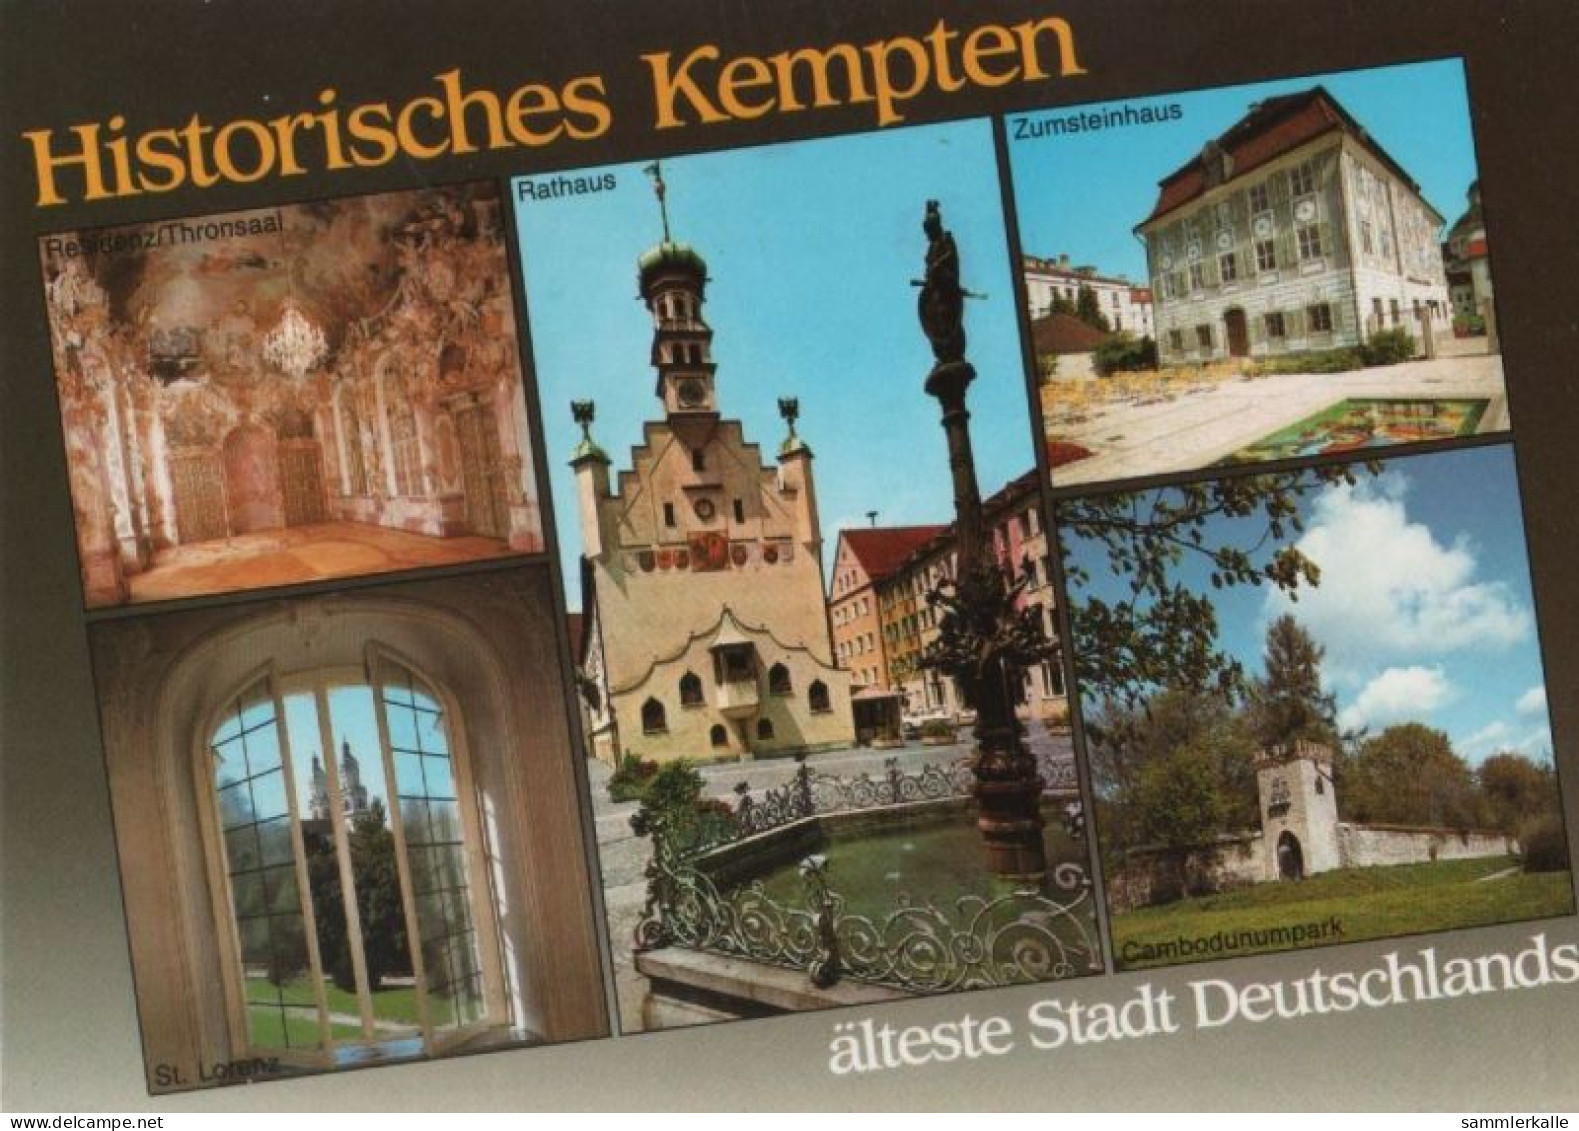 64221 - Kempten - U.a. Residenz, Thronsaal - 1995 - Kempten